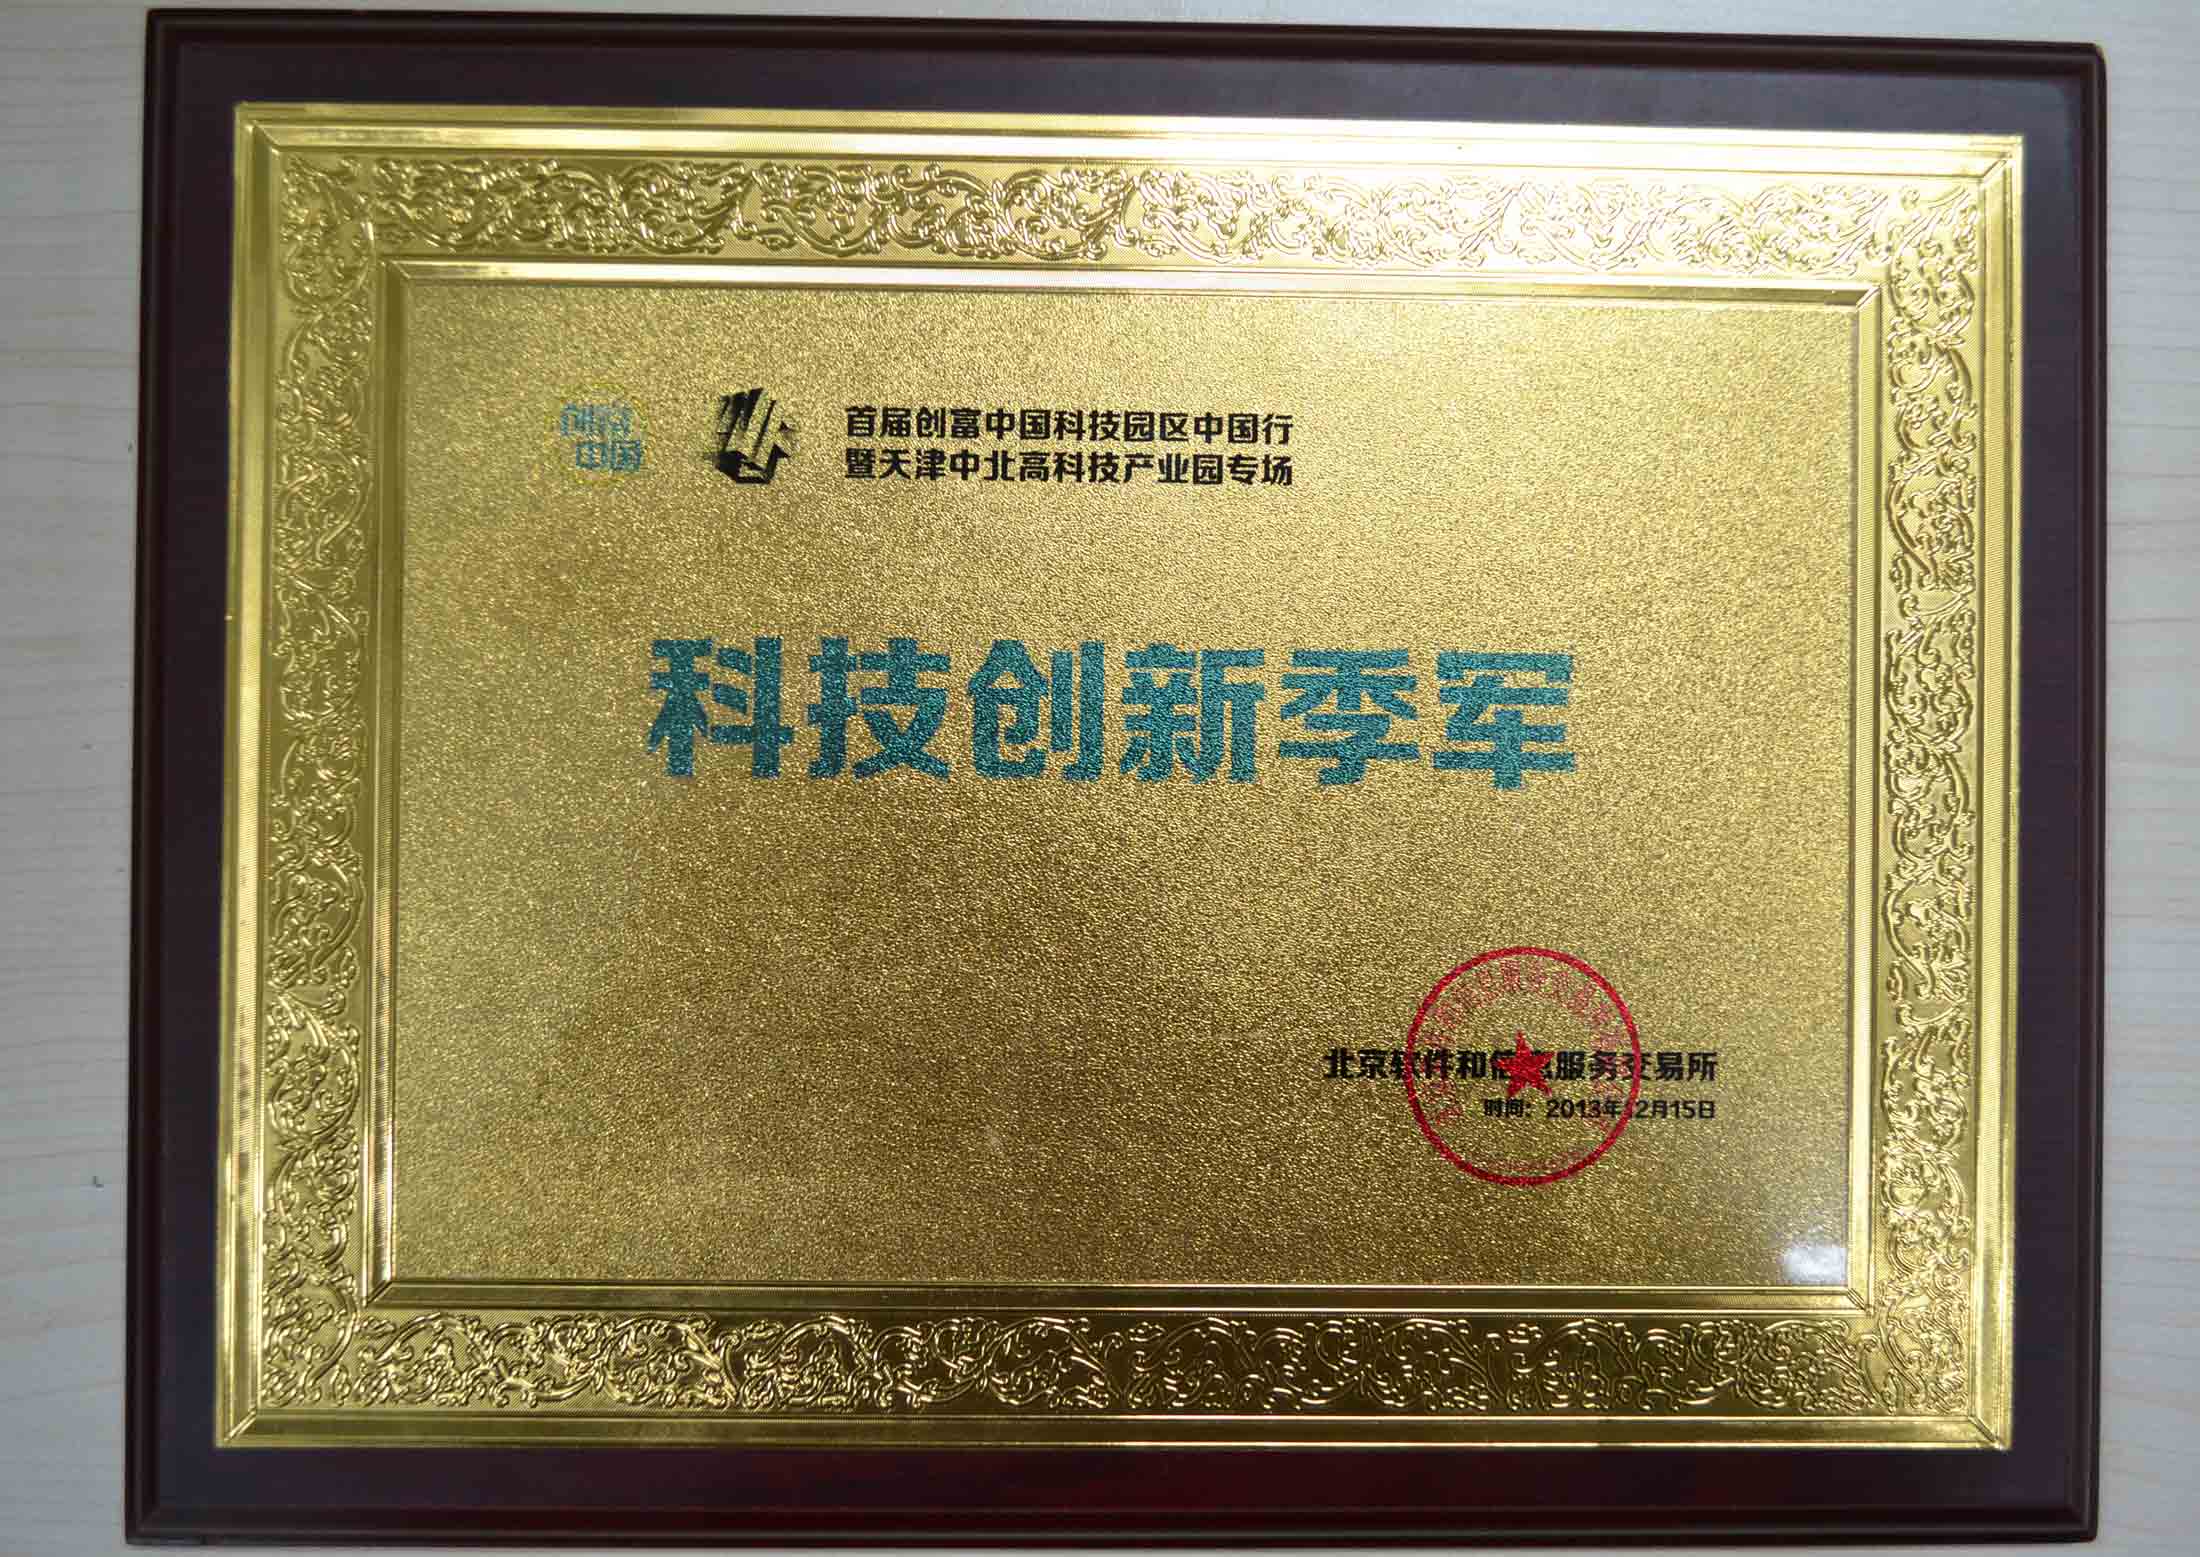 2013年随锐视频云项目获得“创富中国科技园区中国行”科技创新季军